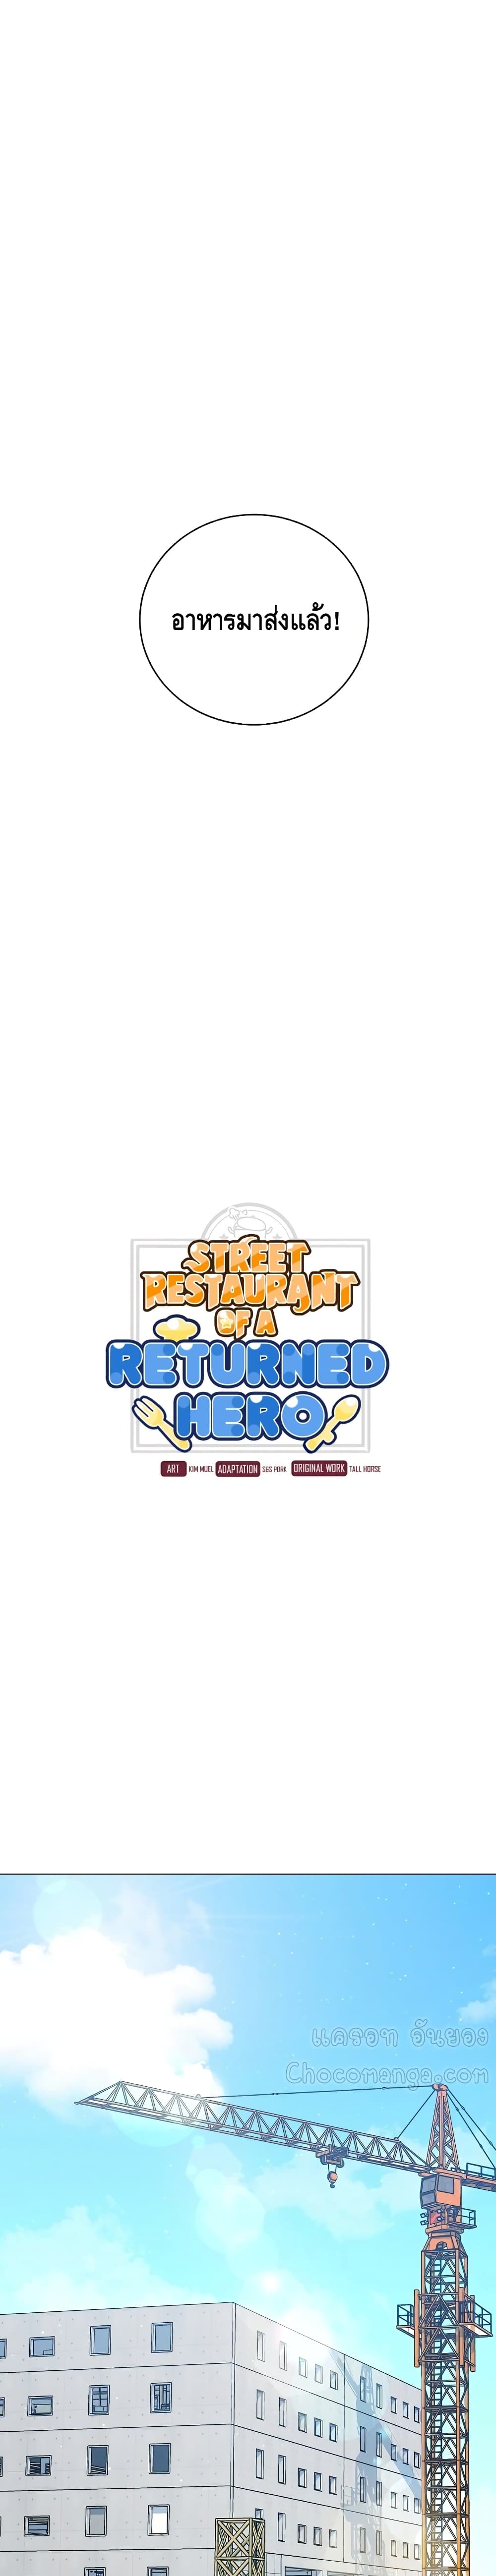 Street Restaurant of a Returned Hero 26-26